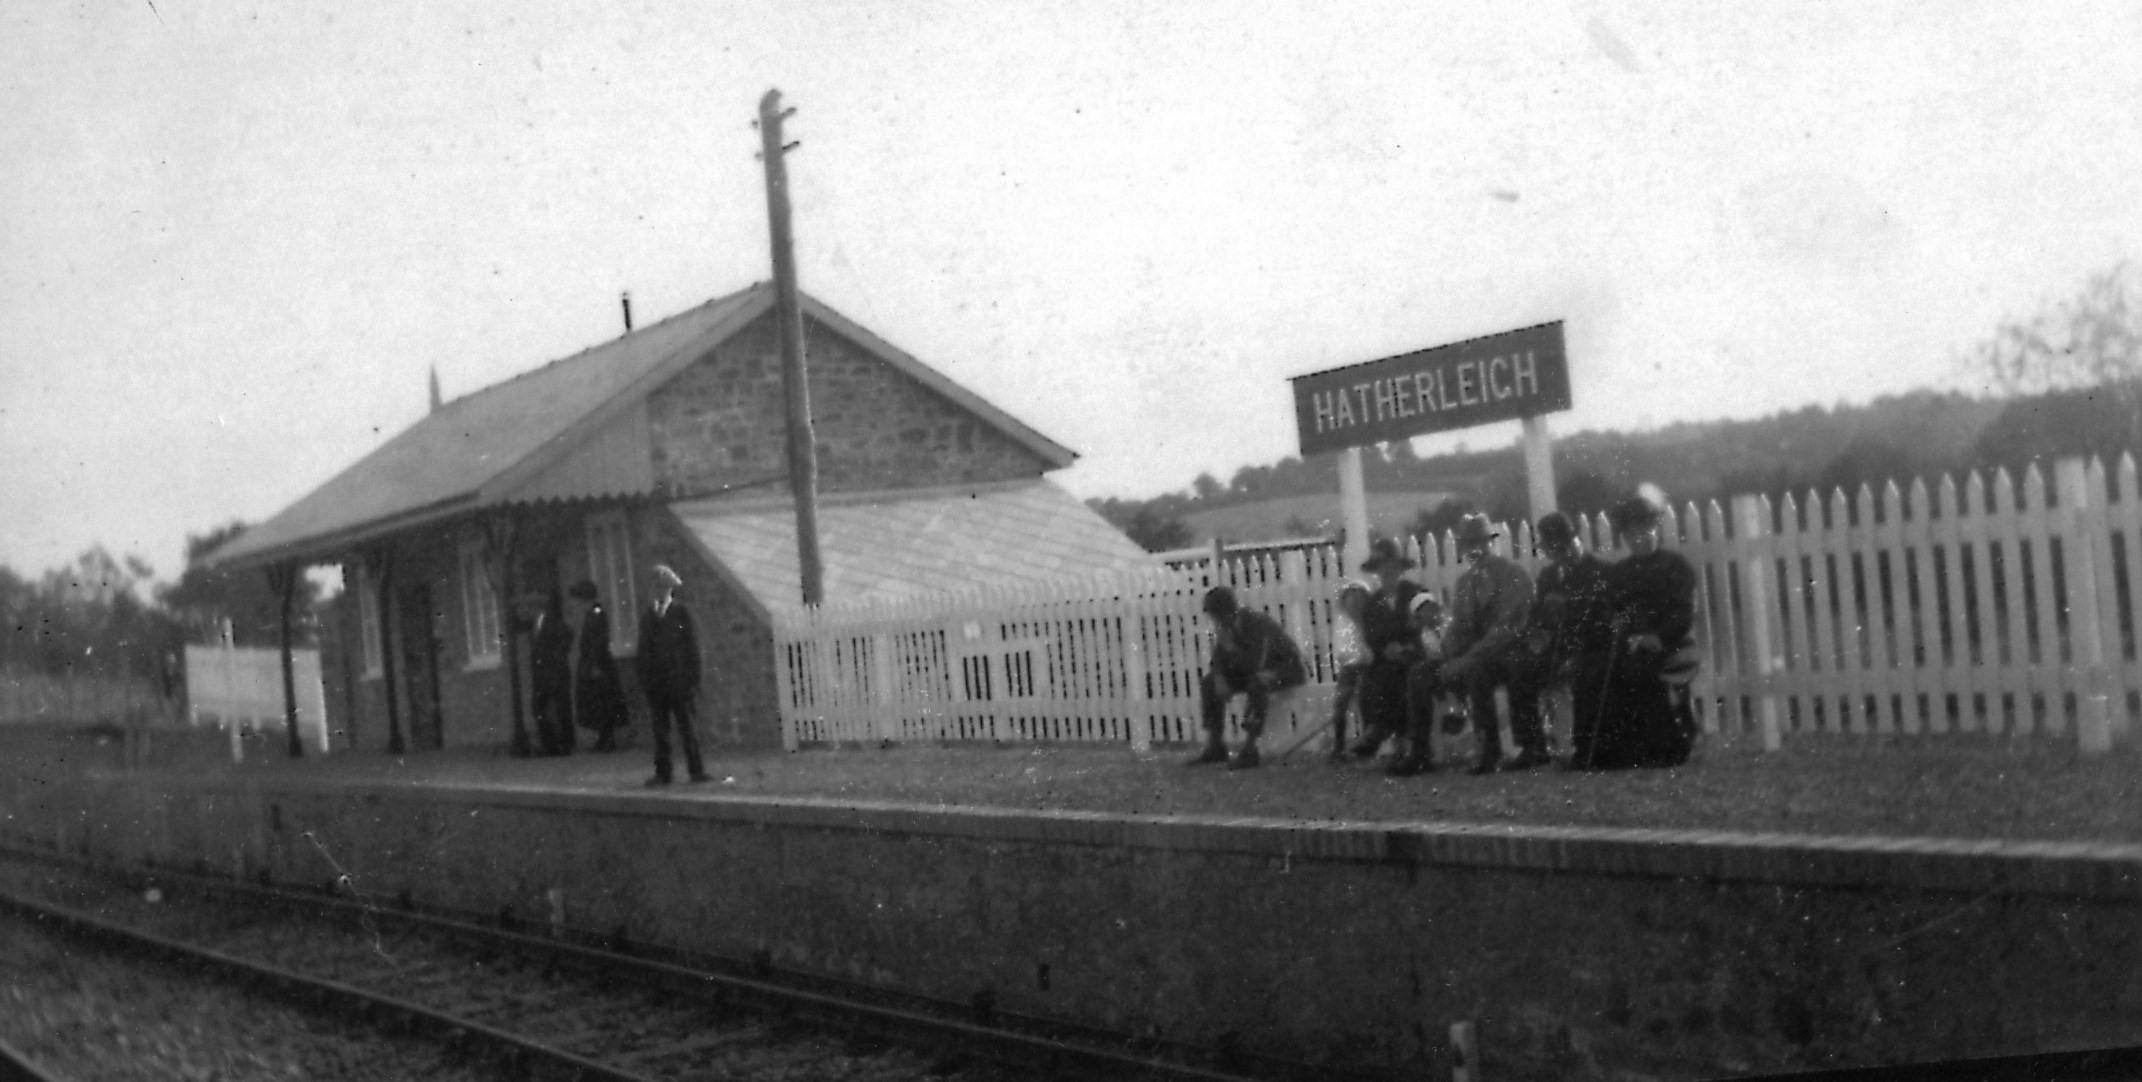 Hatherleigh Station c. 1933